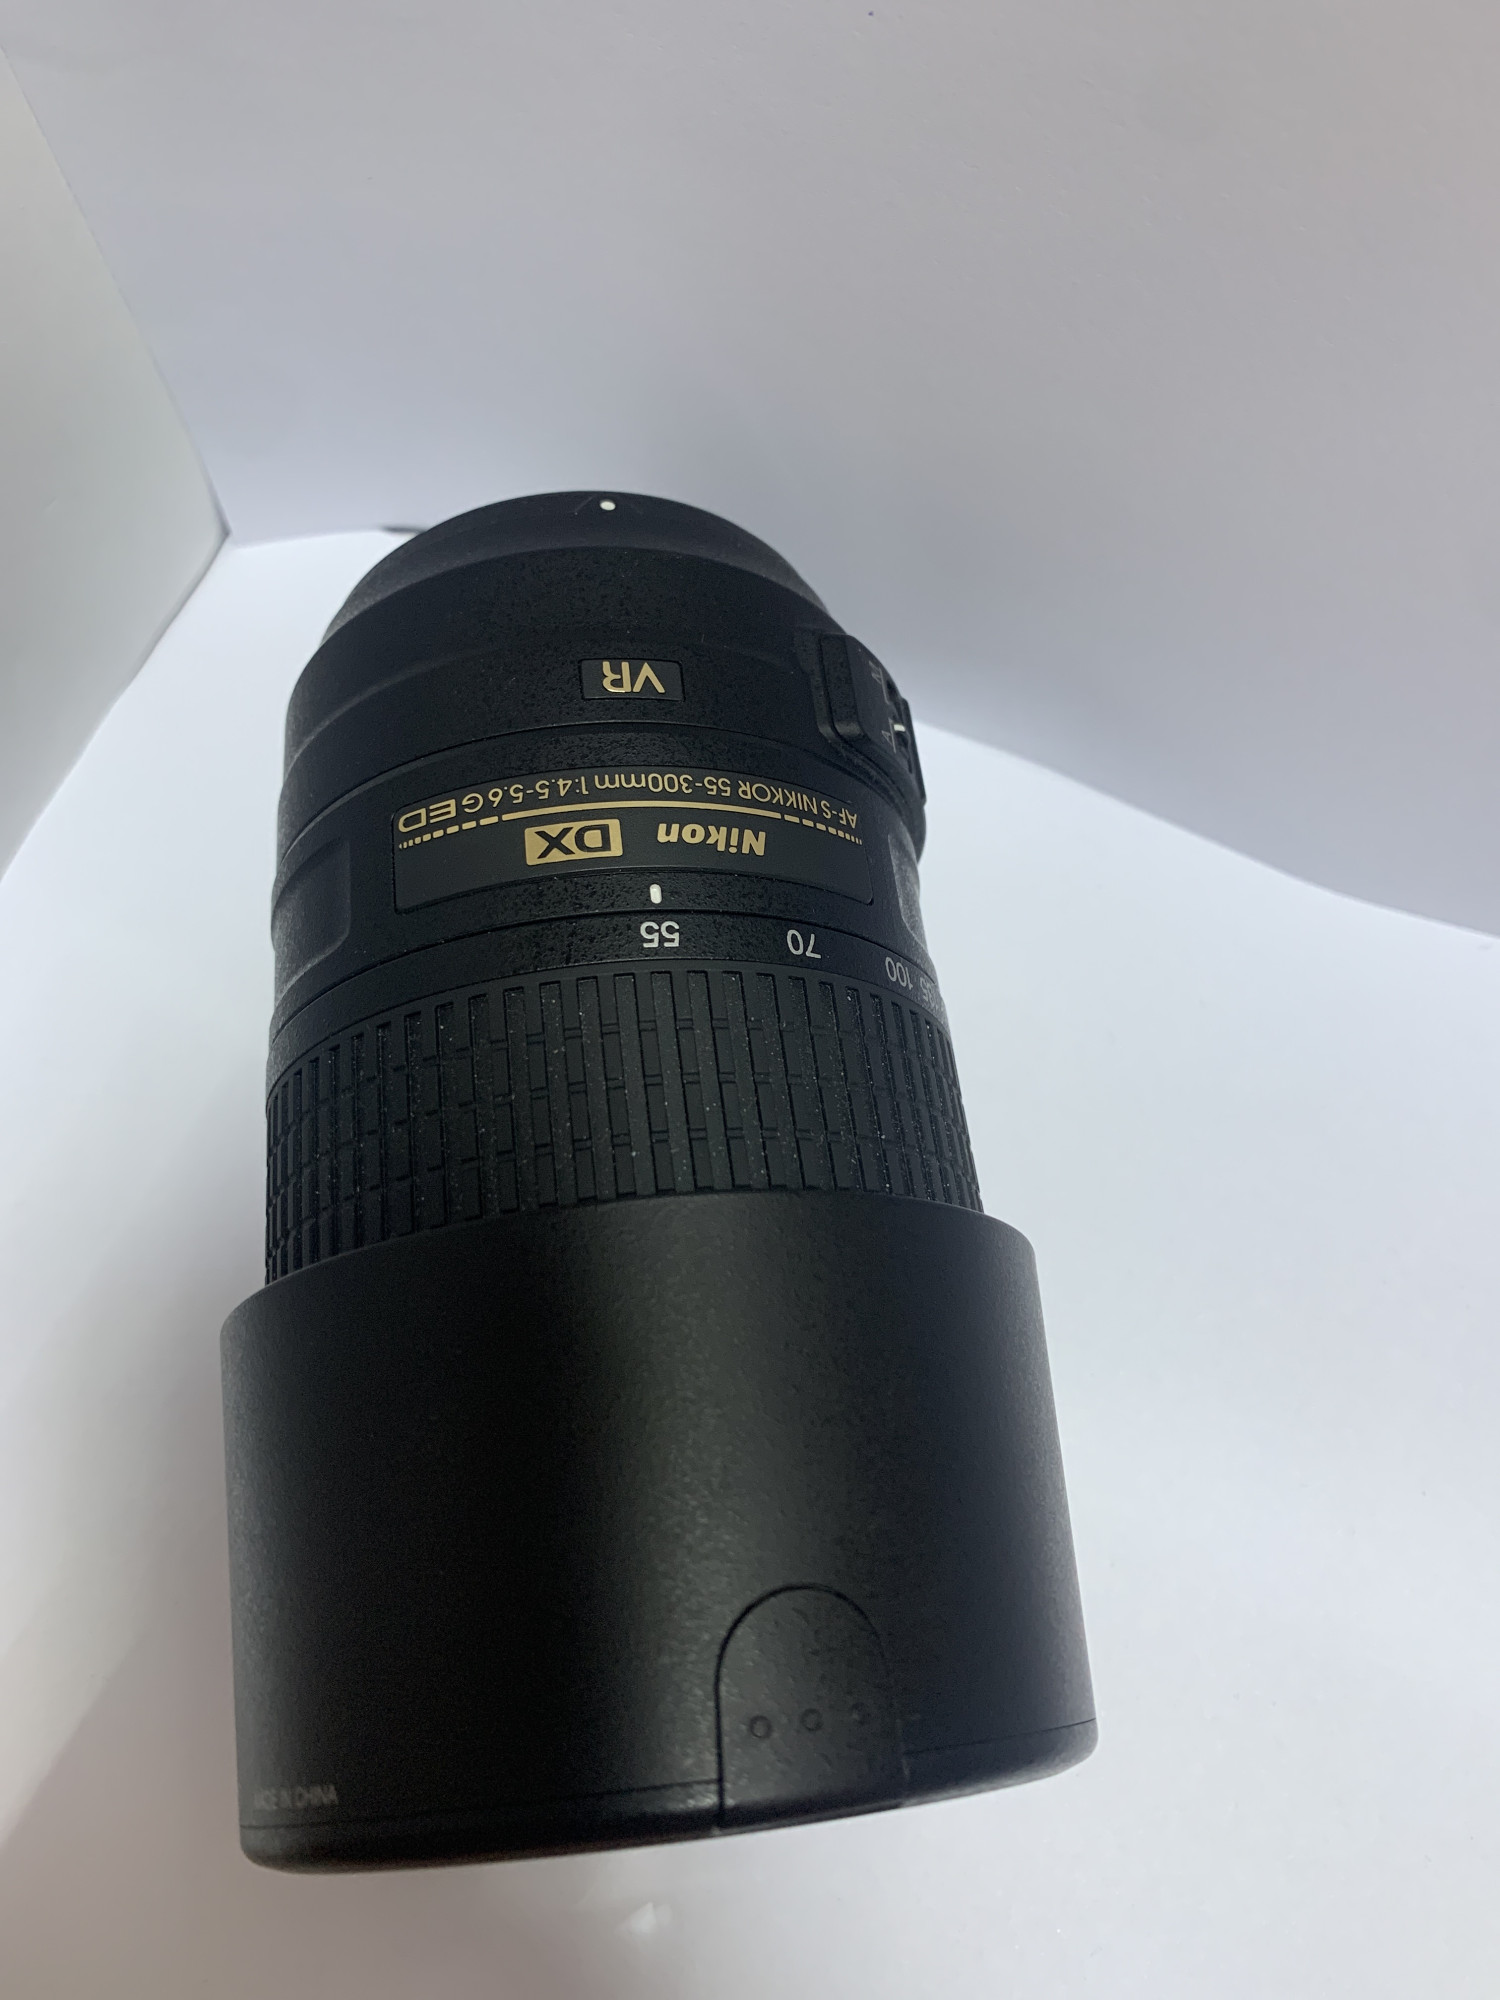 Об'єктив Nikon AF-S NIKKOR 55-300mm f/4.5-5.6G ED VR 1